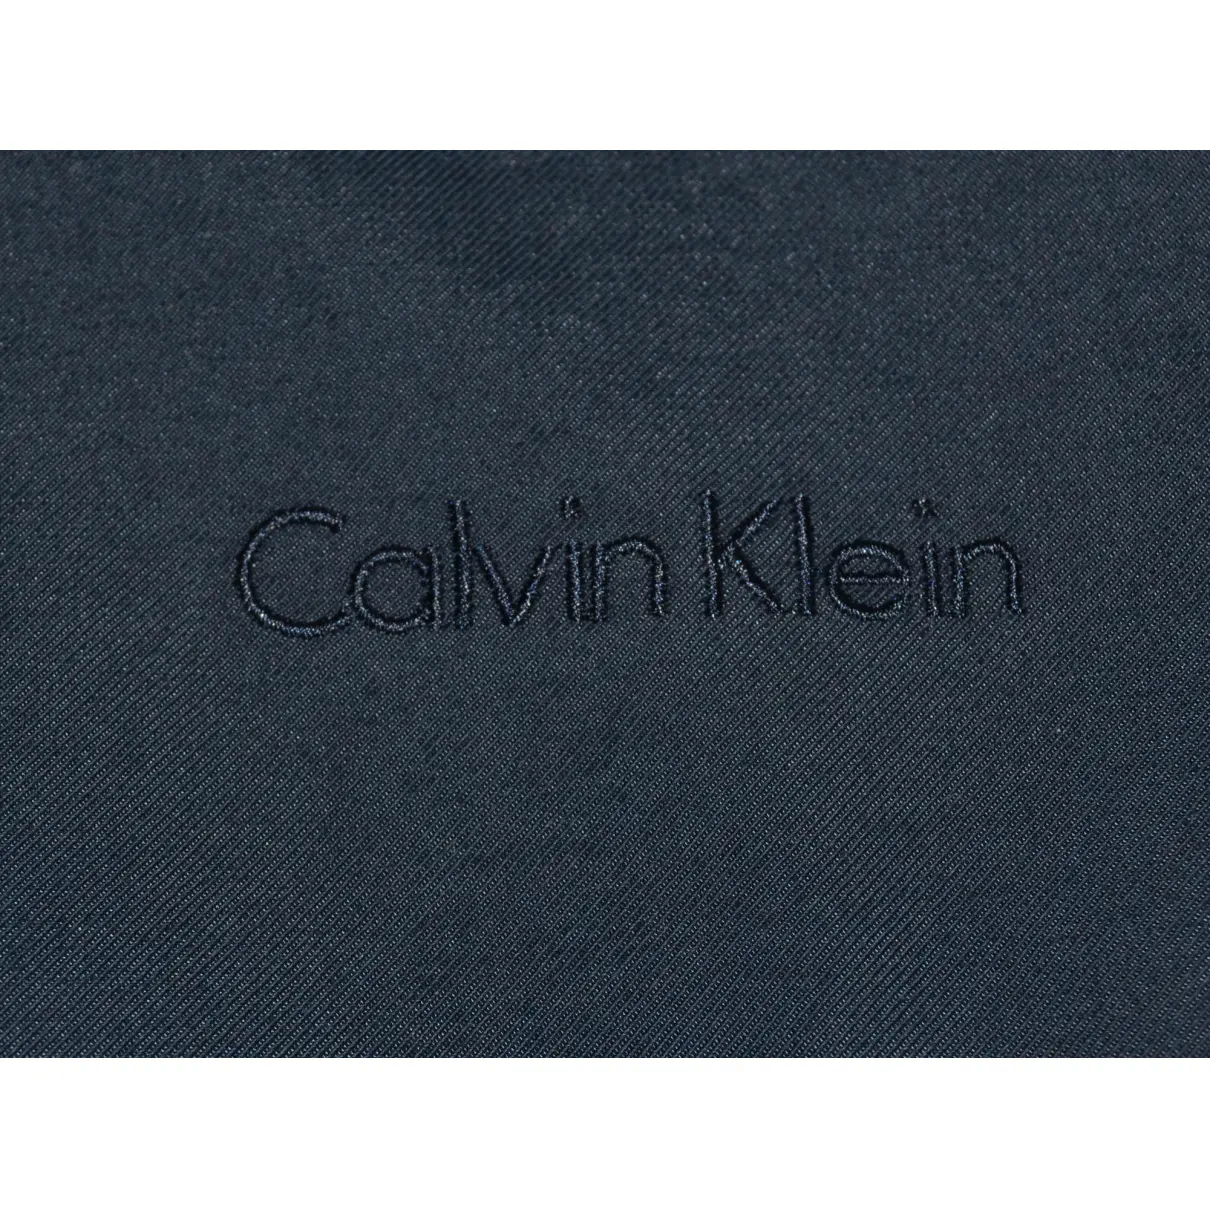 Jacket Calvin Klein